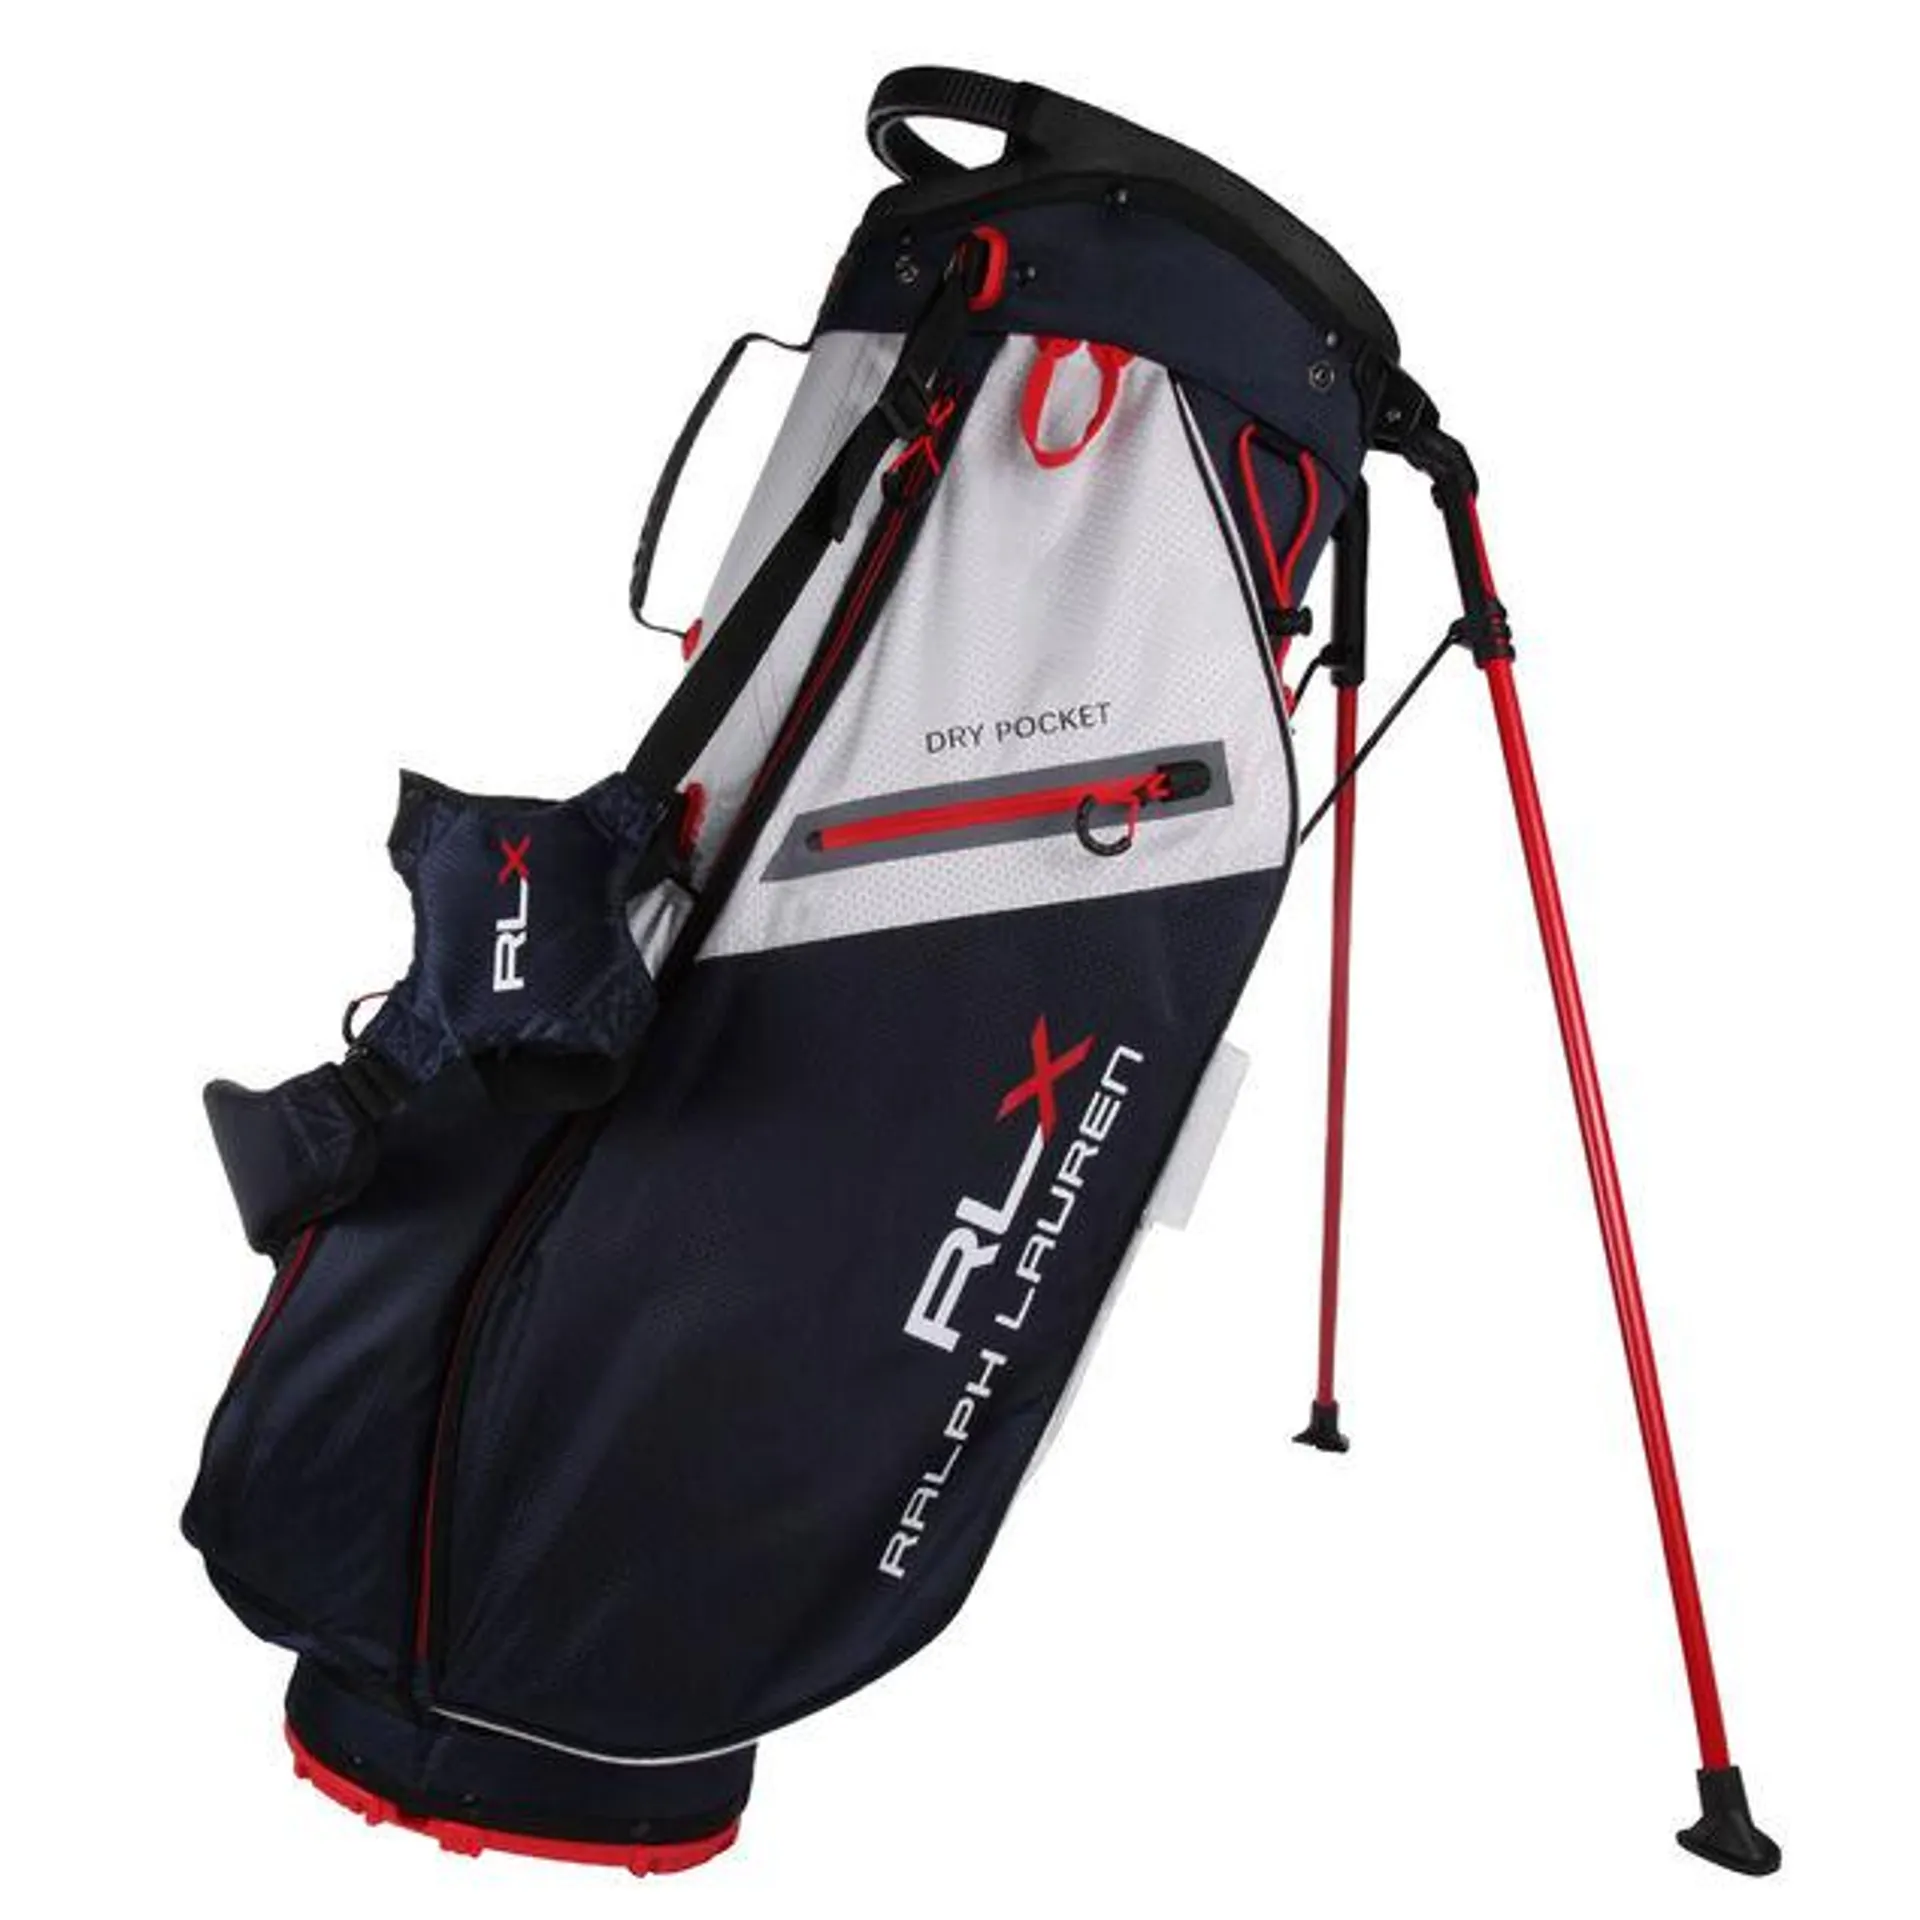 Ralph Lauren RLX Golf Stand Bag